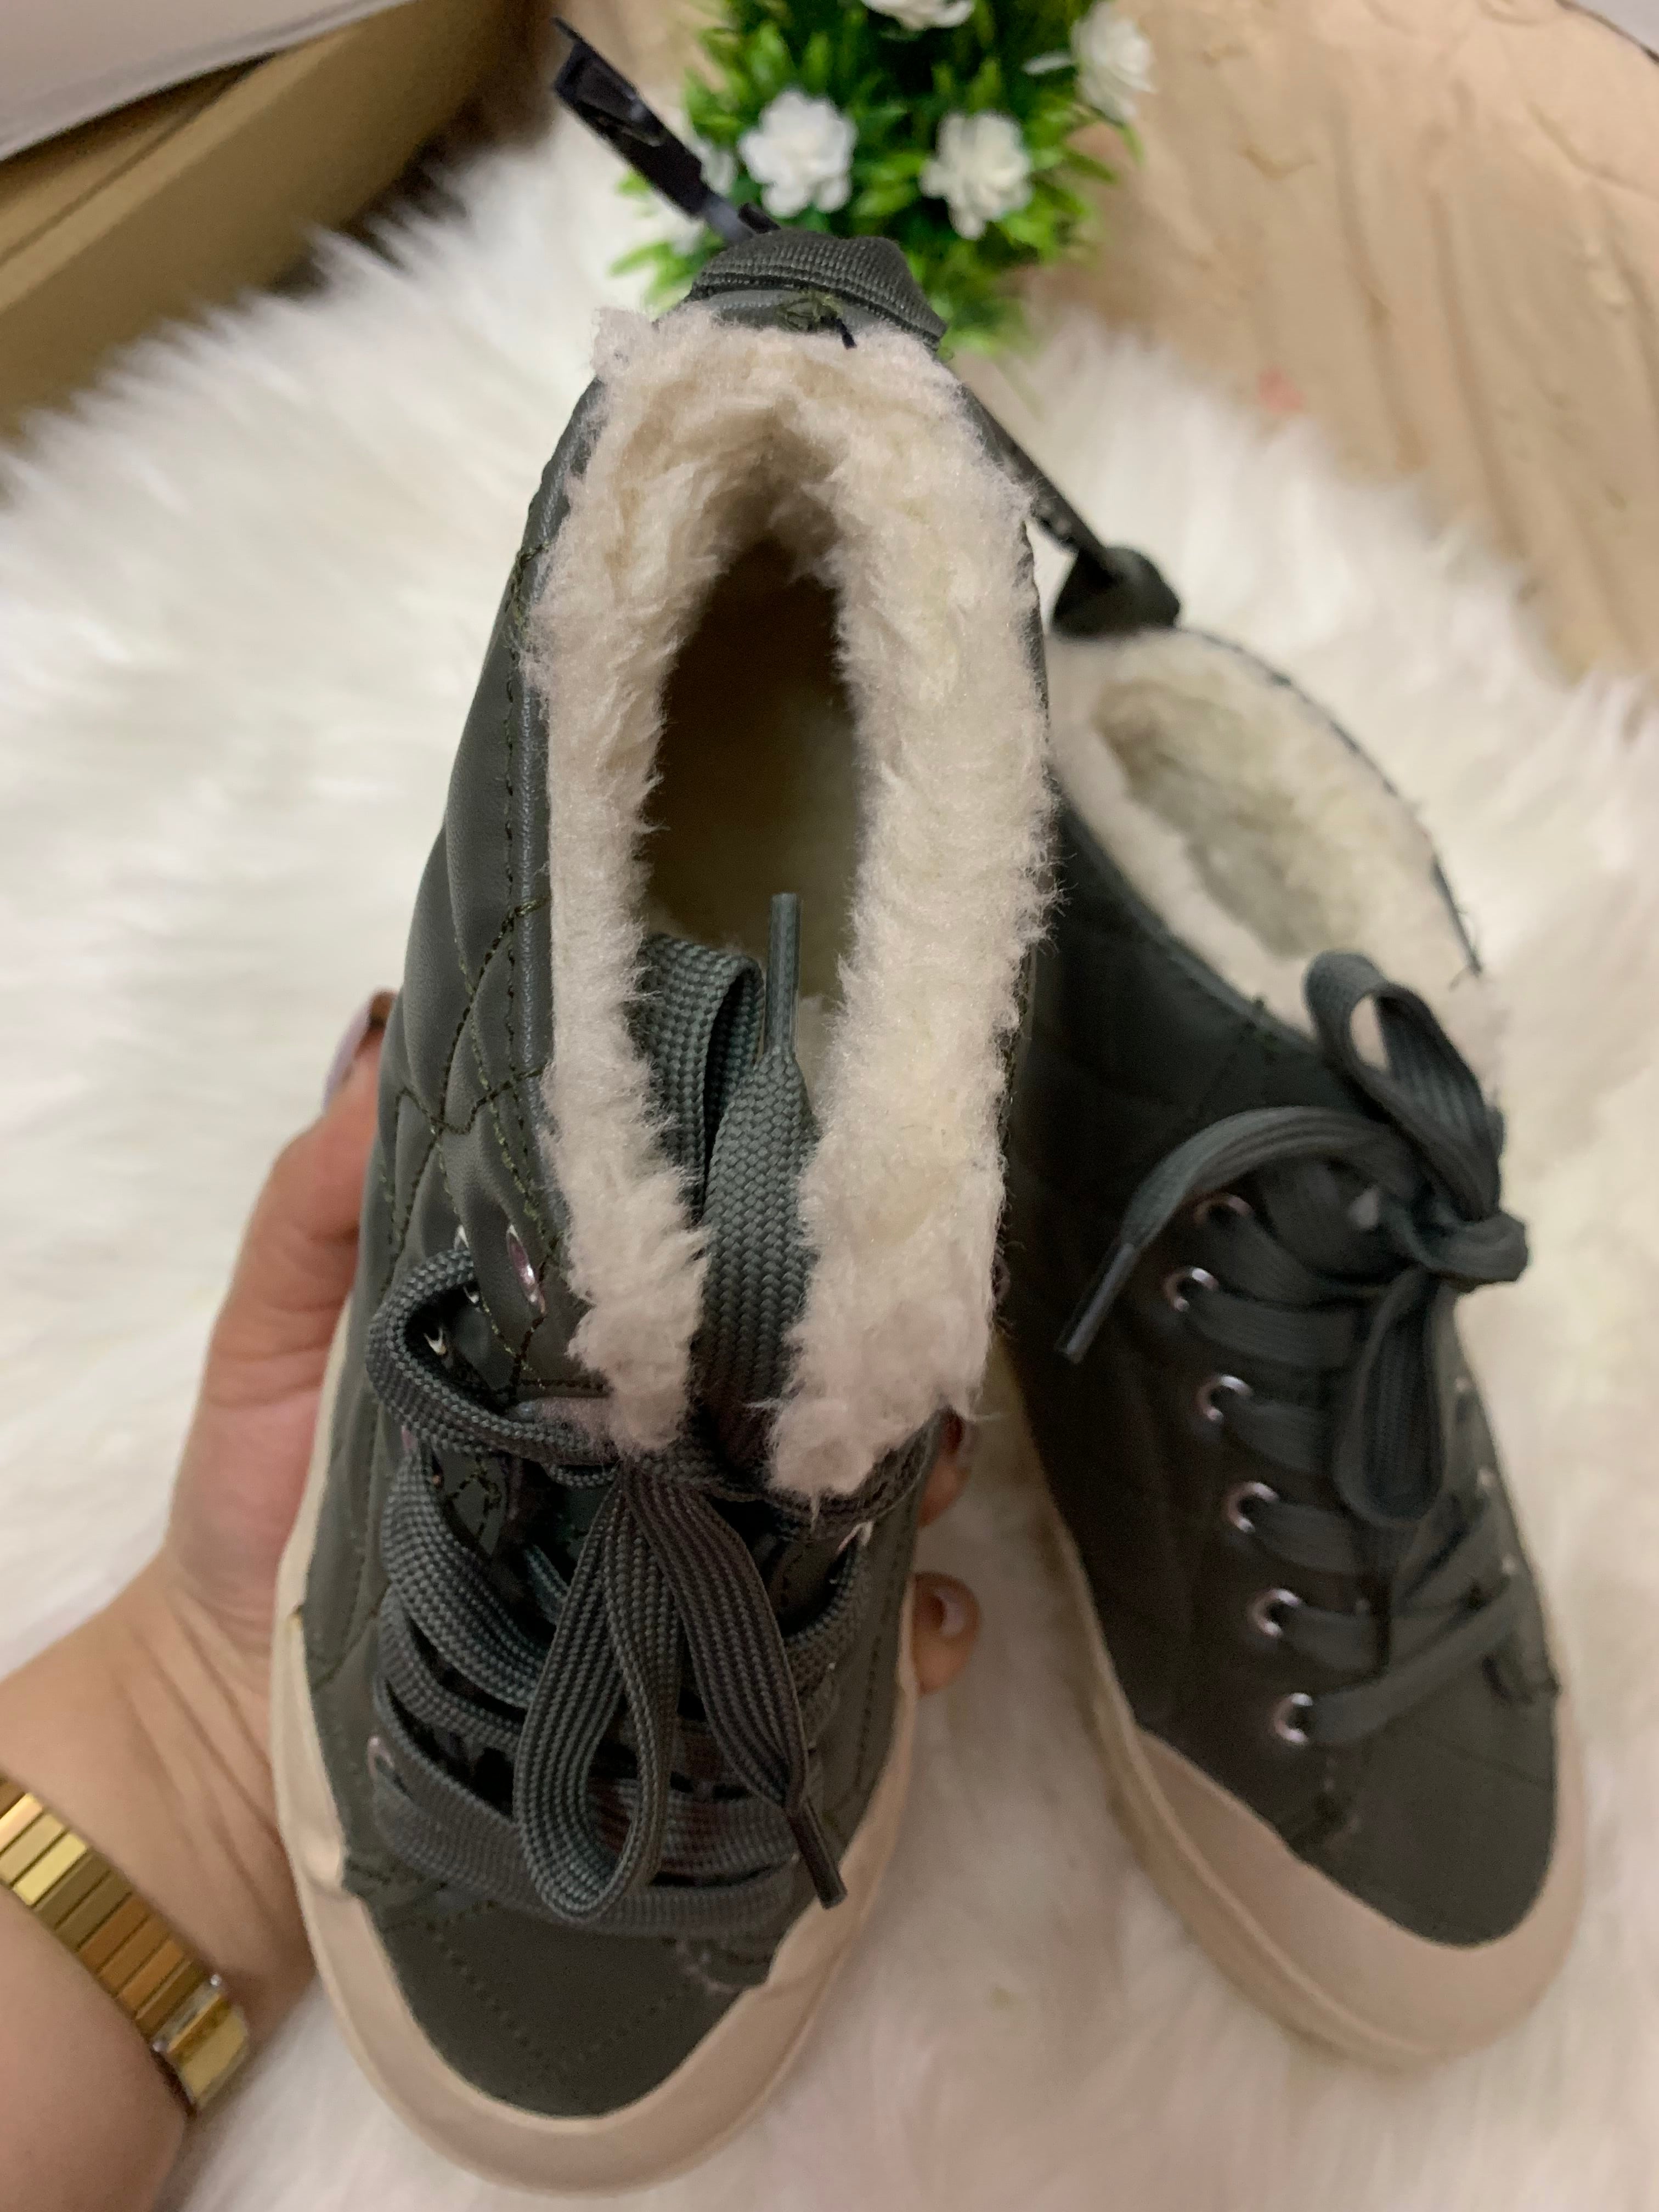 H&M kids’ Unisex warm fleece shoes